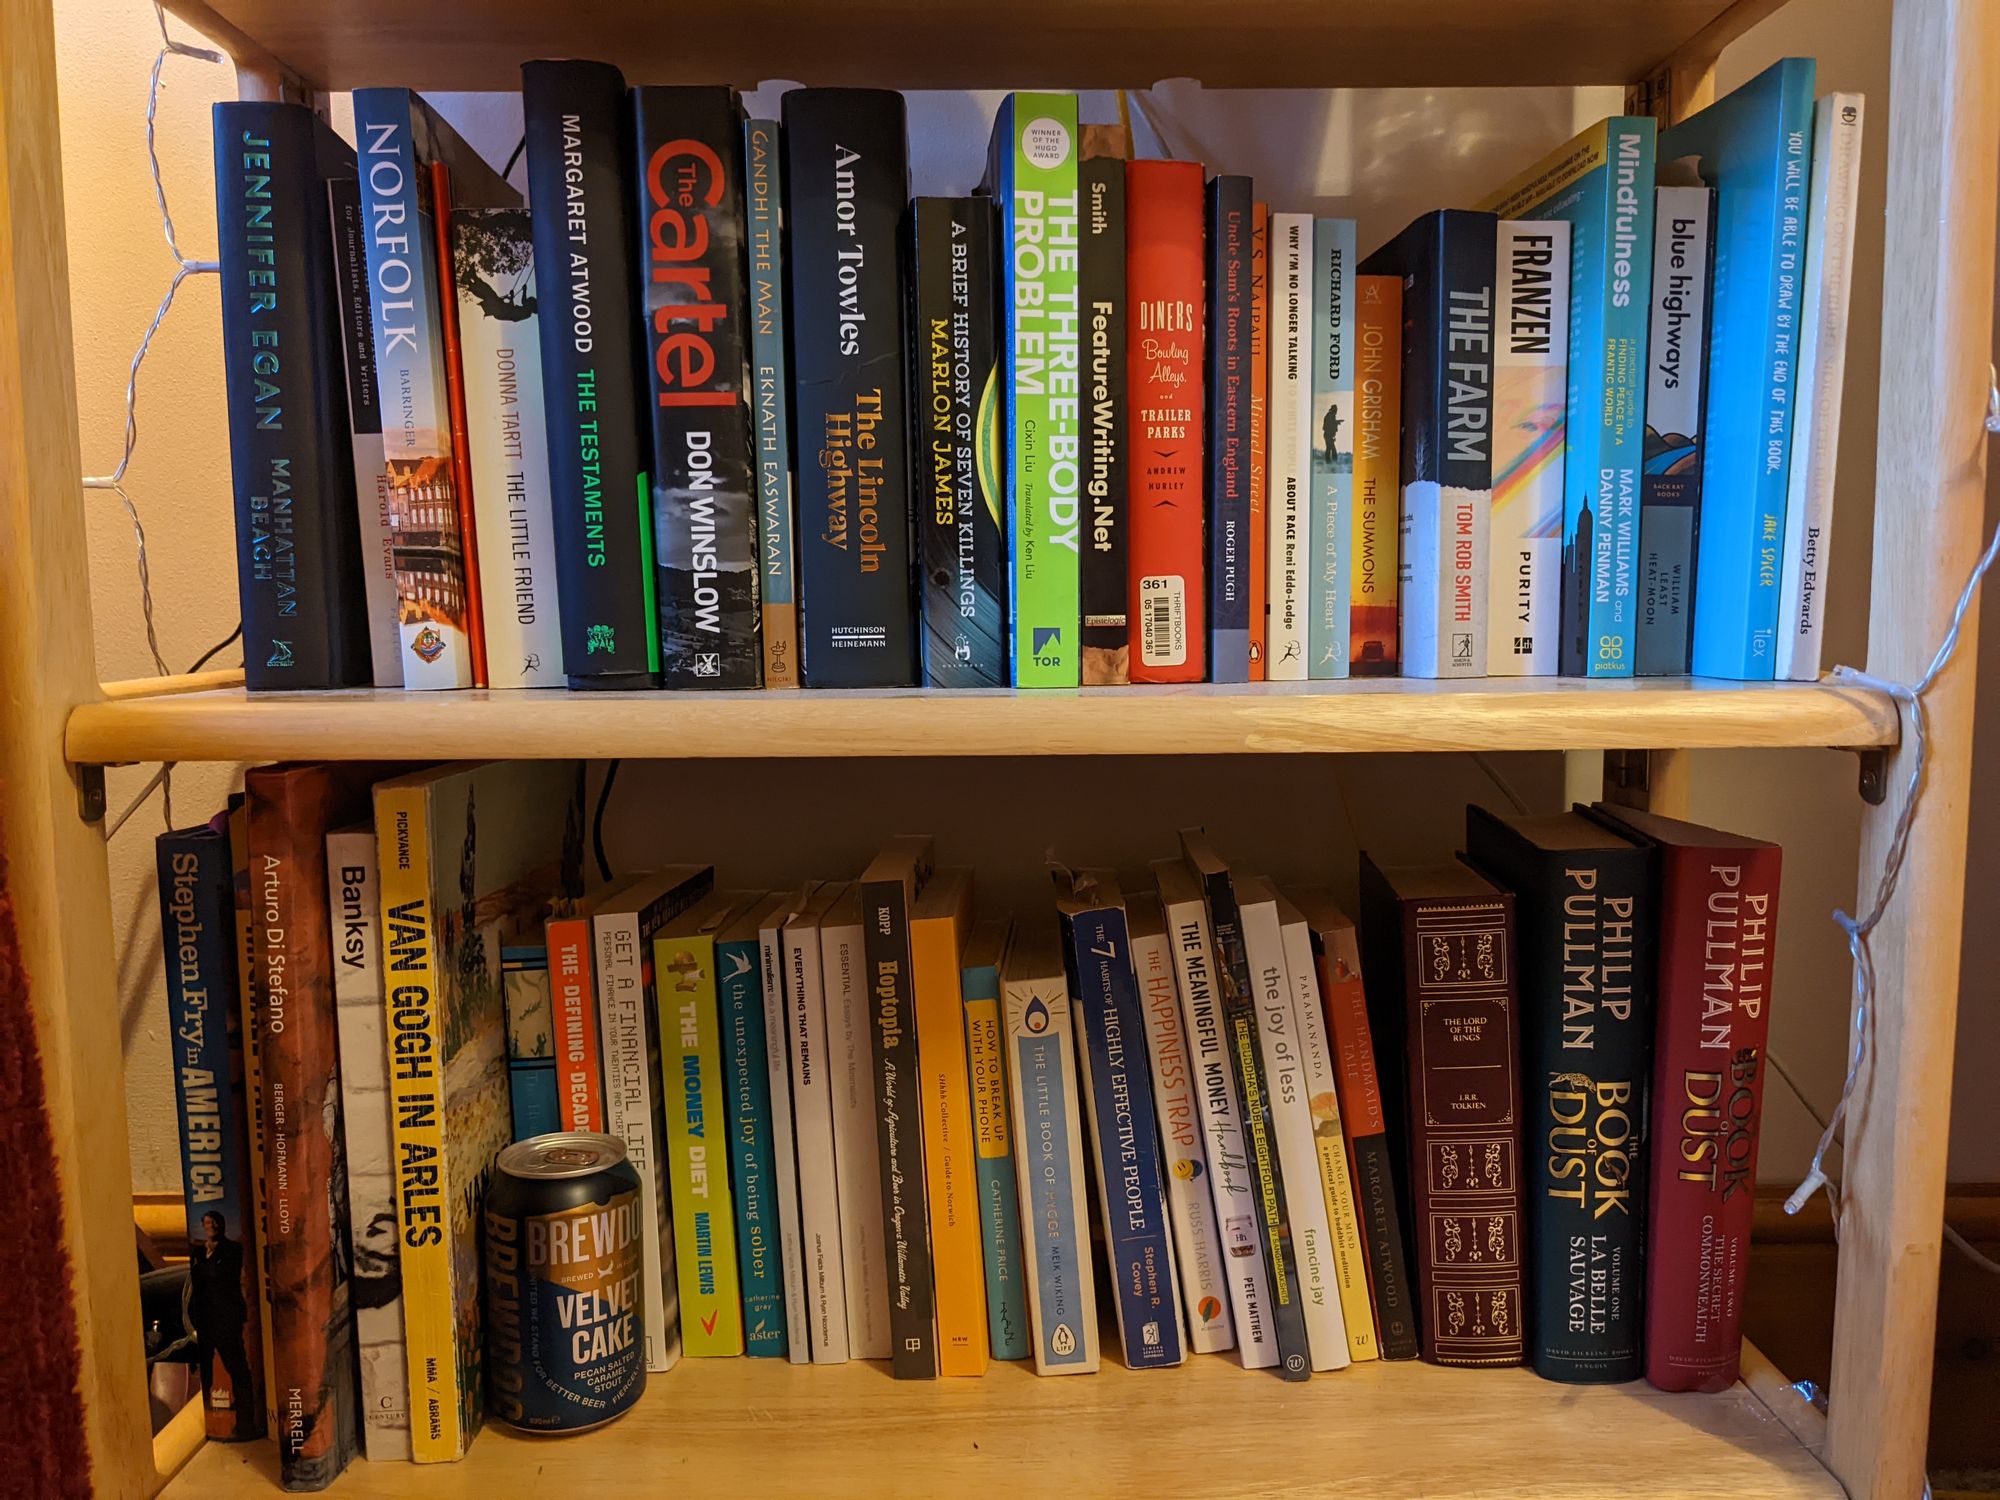 Books on a pine oak shelf.